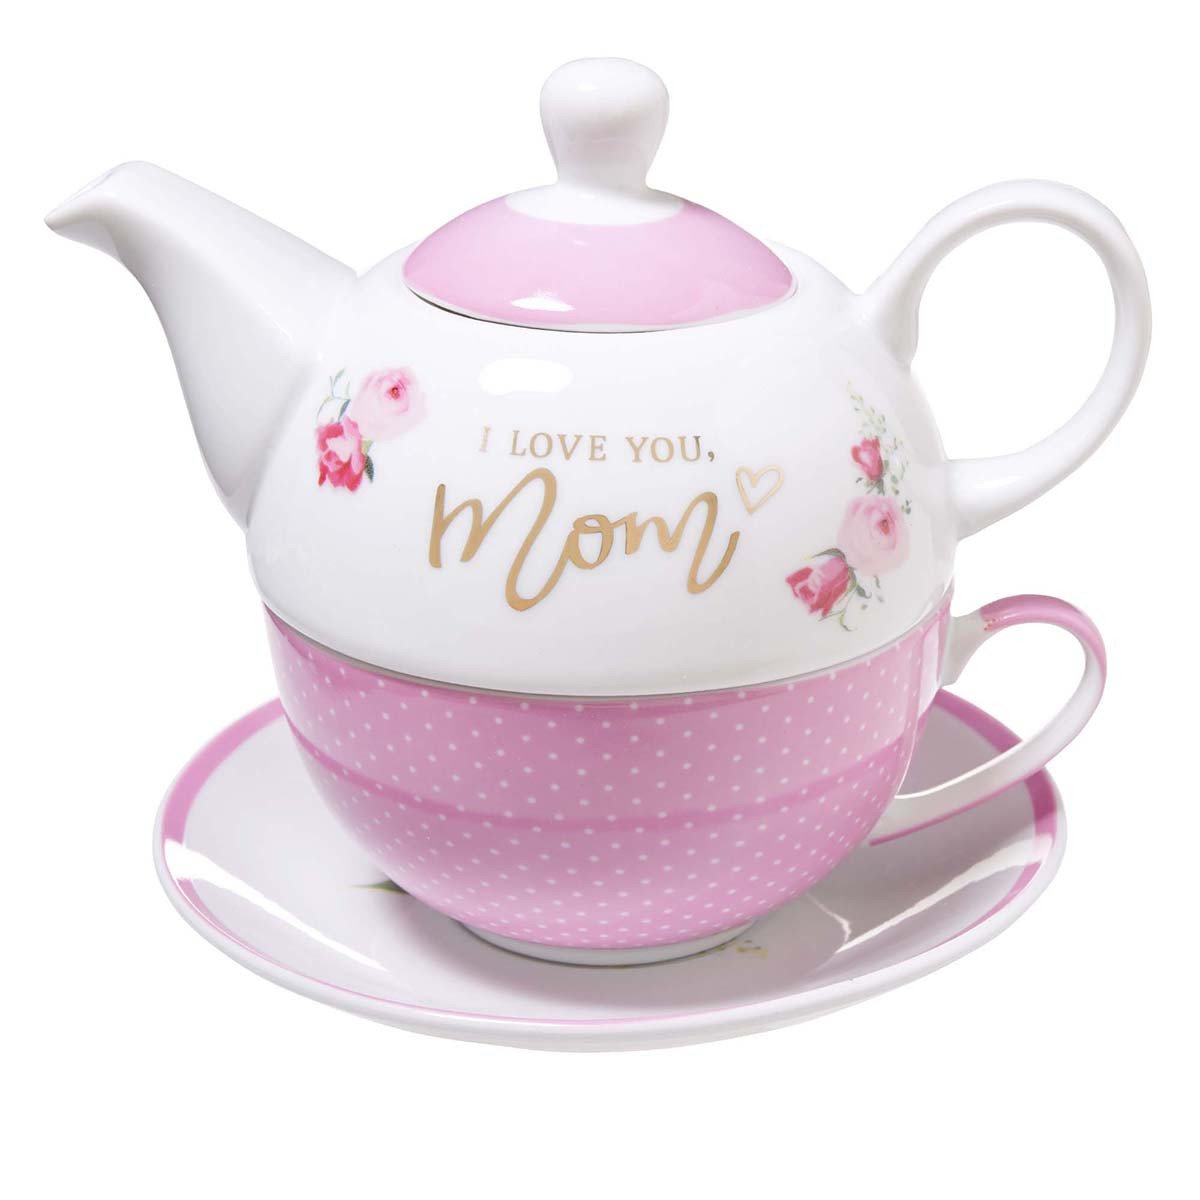 "I Love You, Mom" Teapot